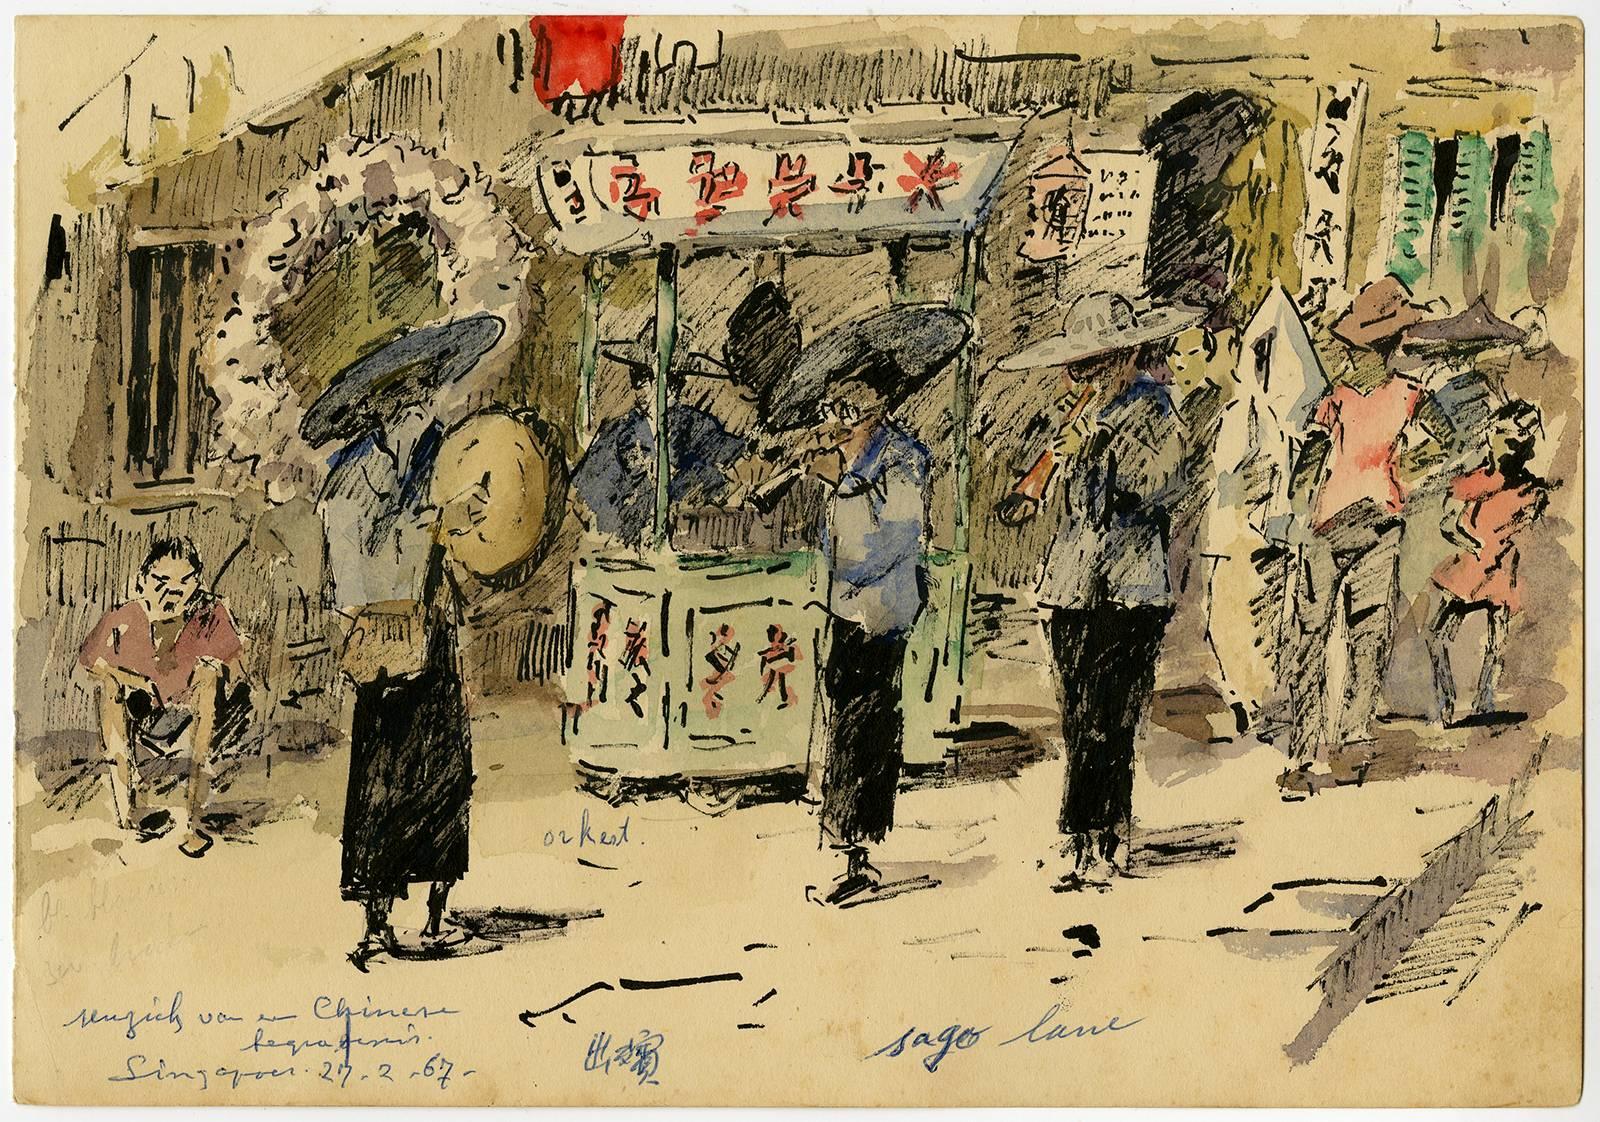 Chinese begrafenis. Singapoer. 27-2-67. – Art von Evert Jan Ligtelijn